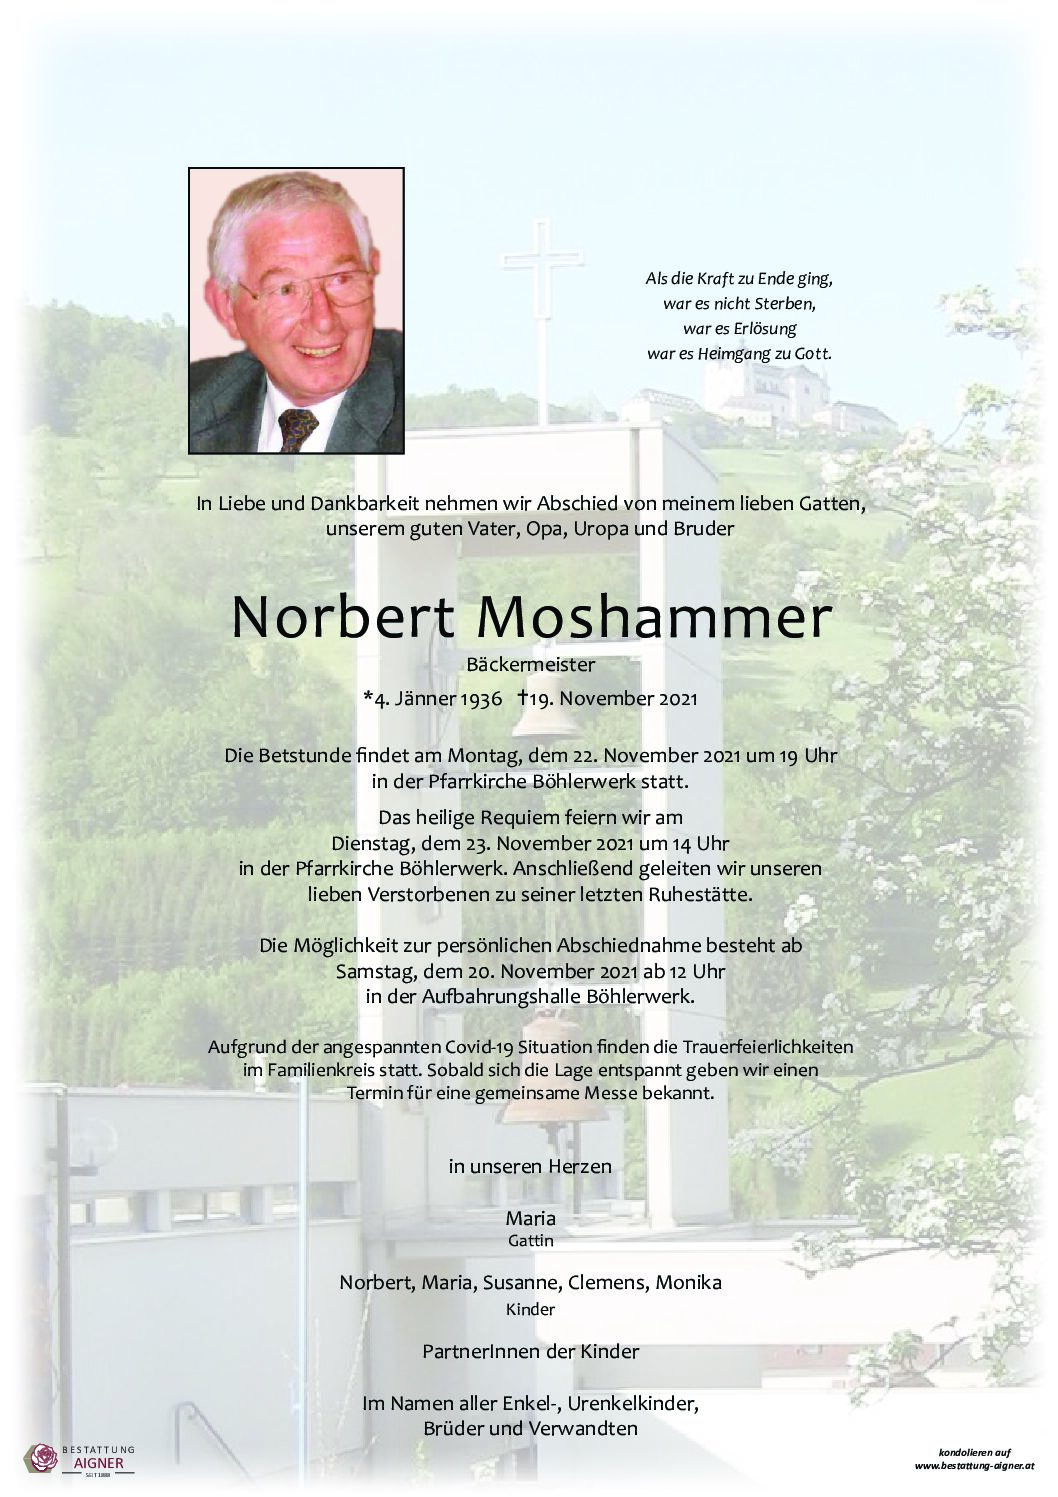 Norbert Moshammer